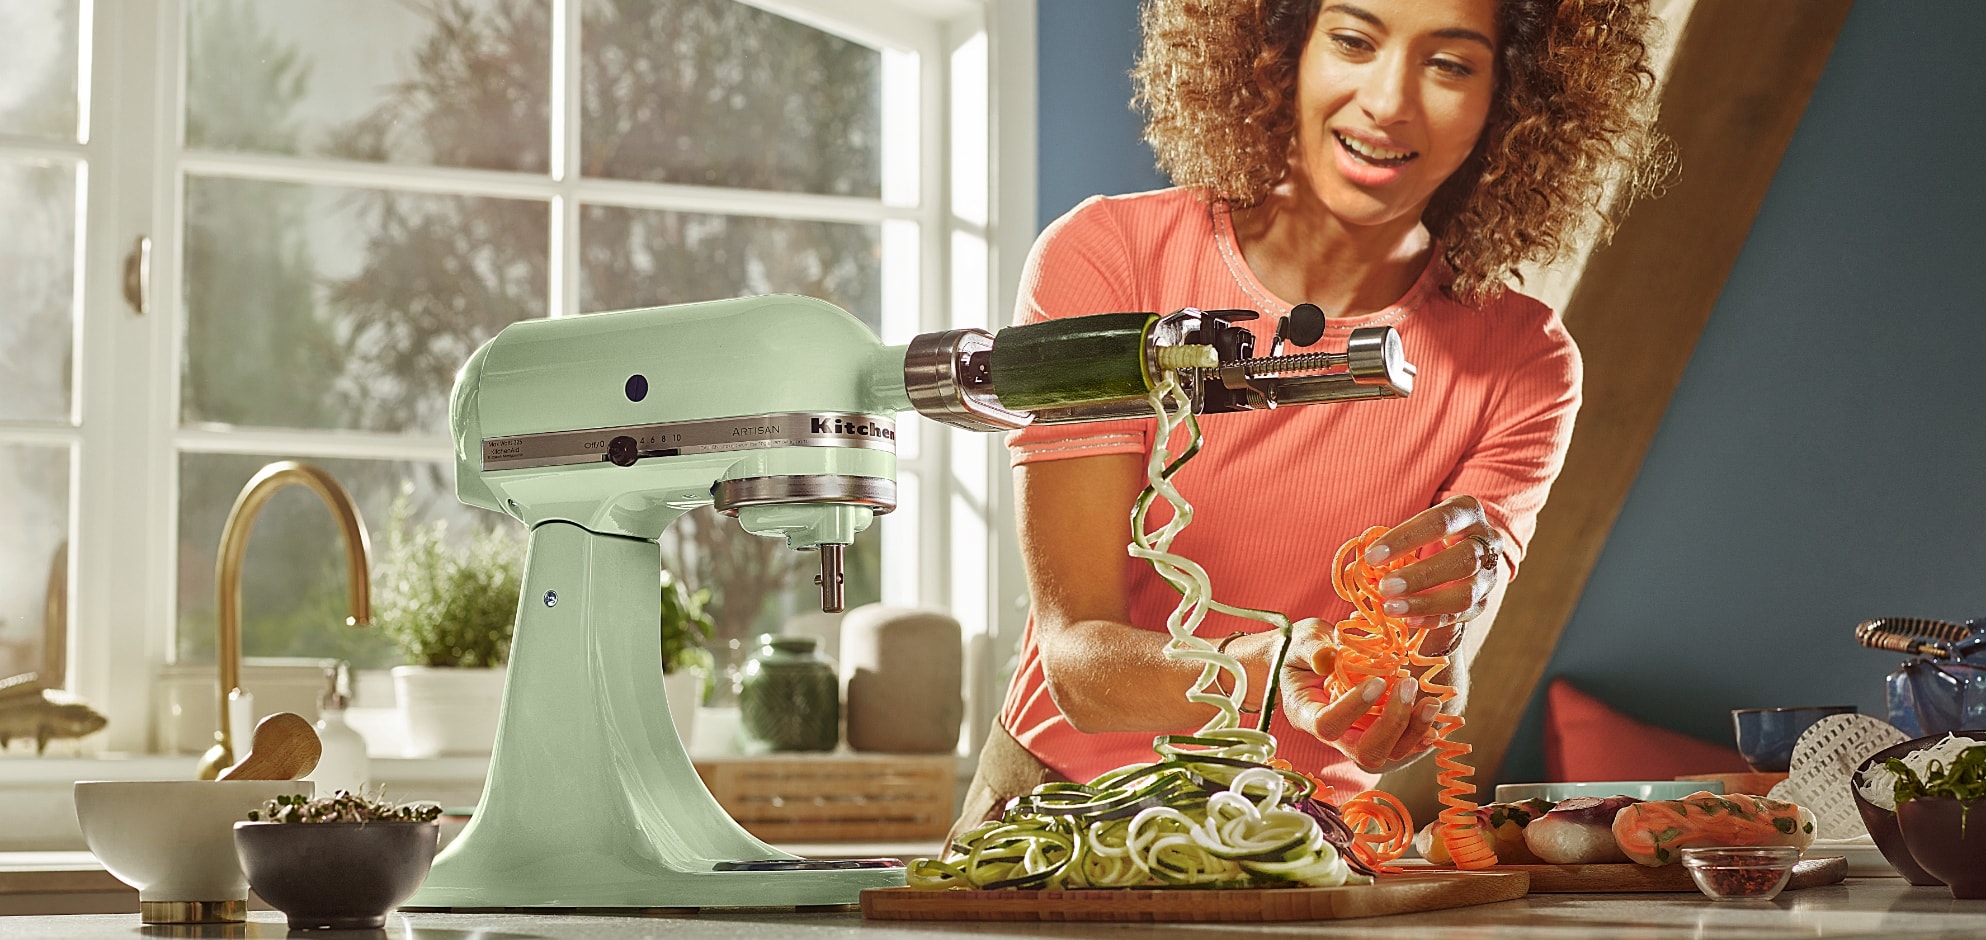 Gevoelig voor Afstudeeralbum zich zorgen maken Health check mixer/keukenrobot | KitchenAid NL